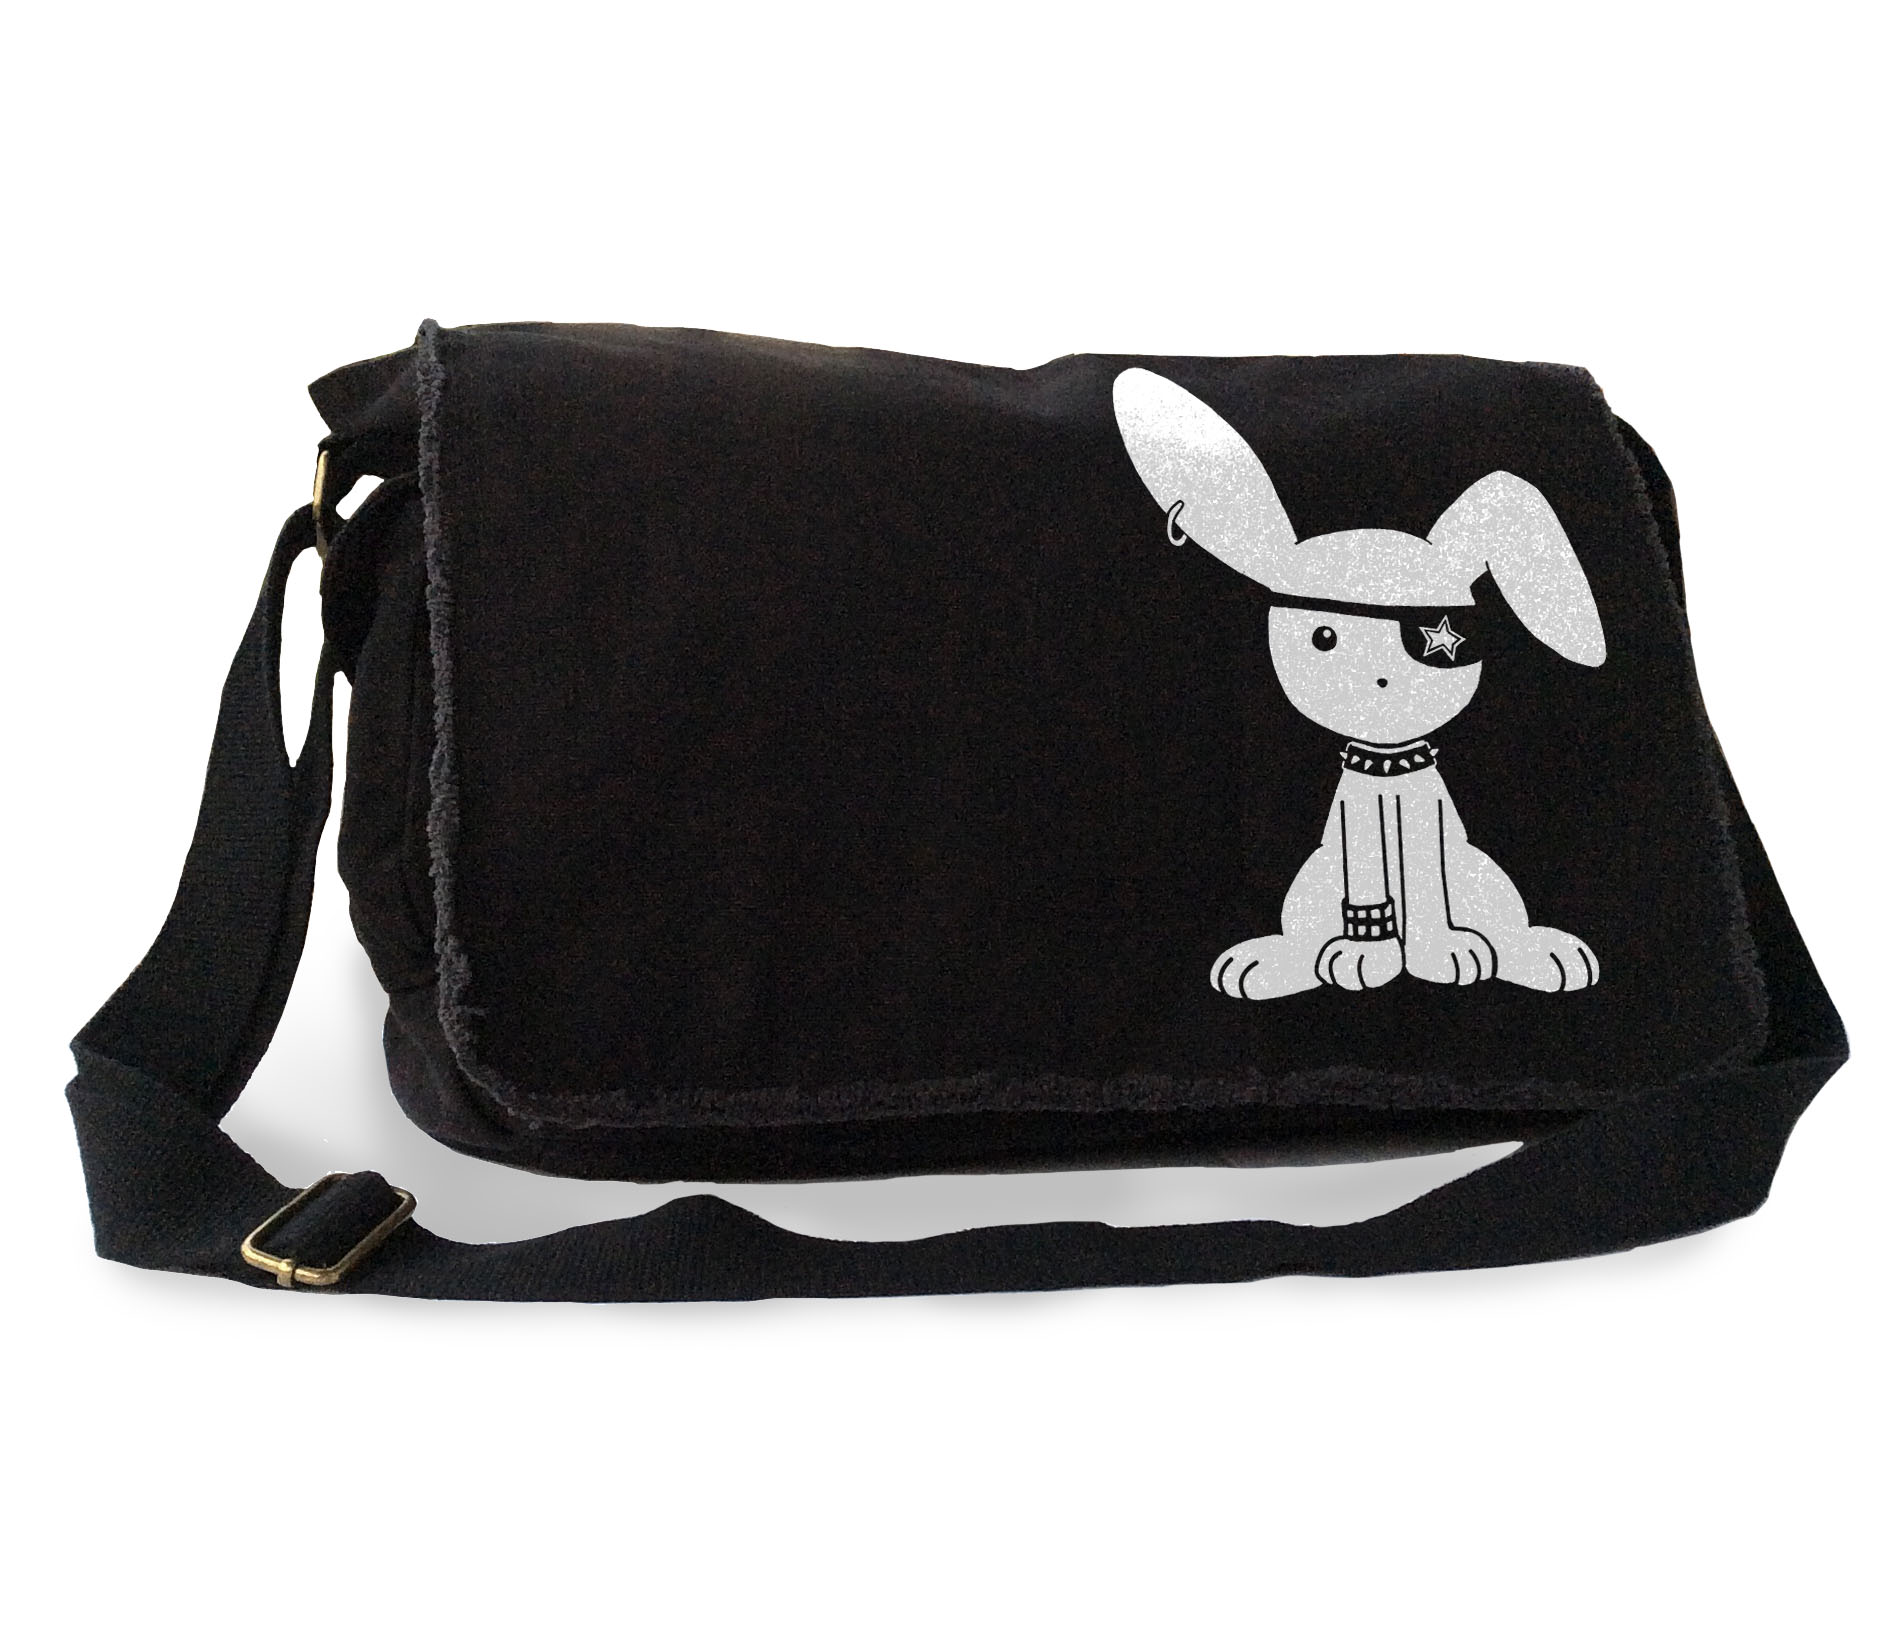 Gothic Jrock Bunny Messenger Bag - Black